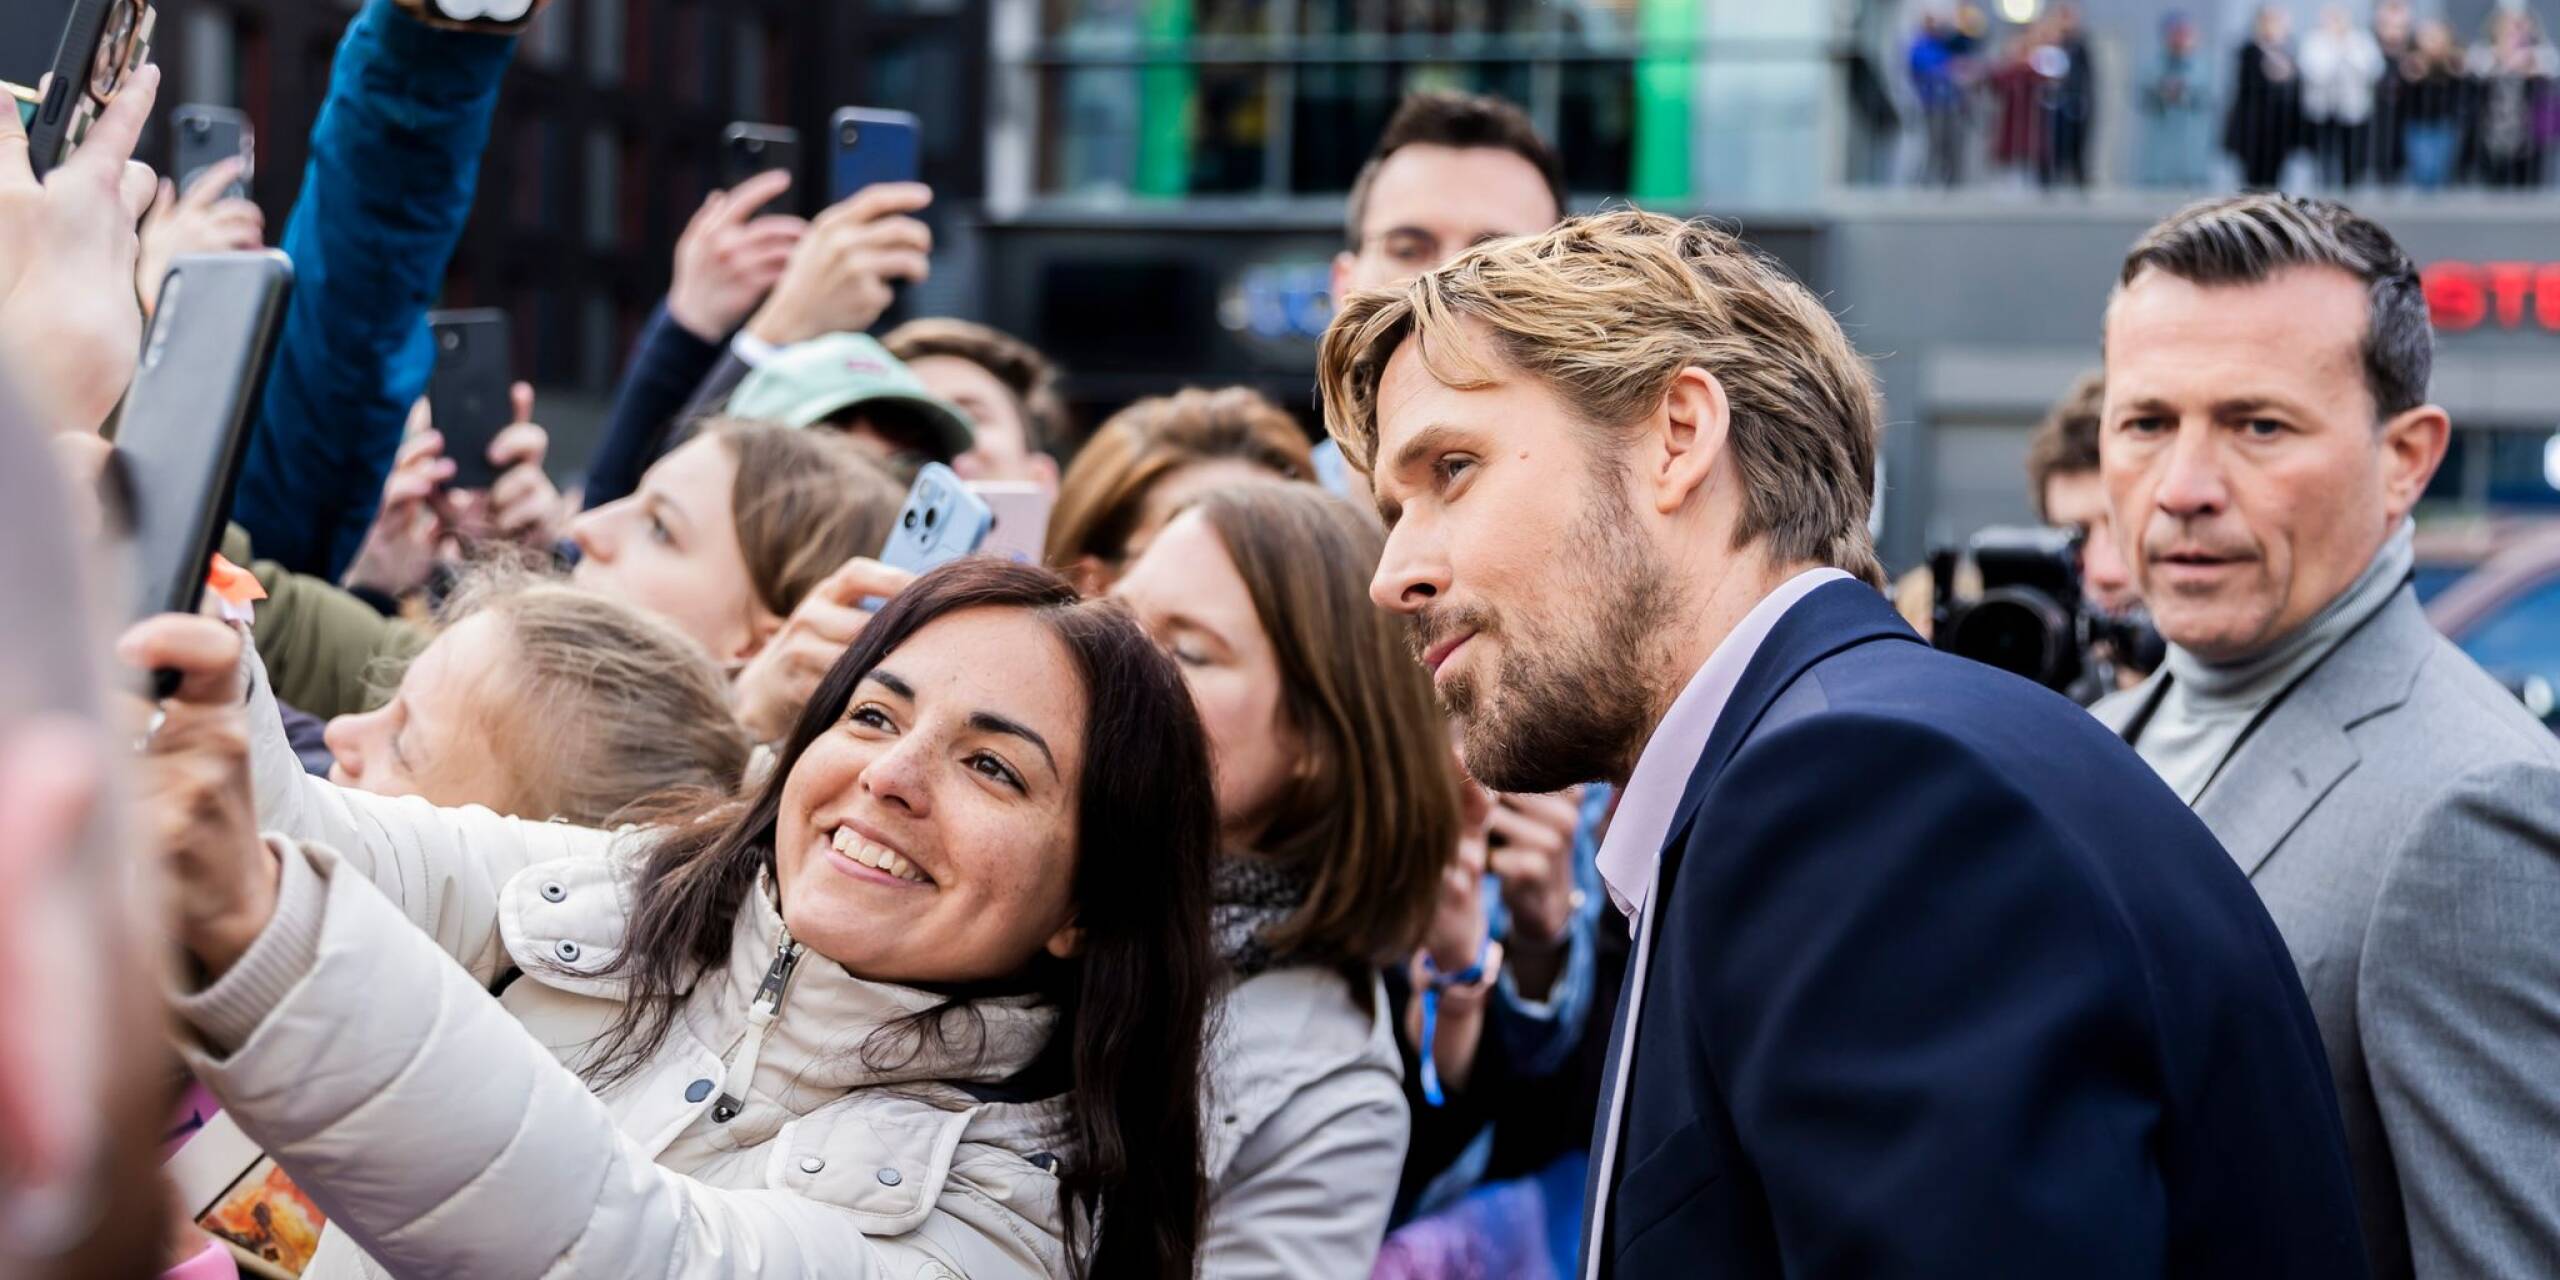 Einmal lächeln: Ryan Gosling posiert für ein Foto mit einem Fan. Der Schauspieler ist mit seiner Kollegin Emily Blunt für die Europapremiere der Actionkomödie «The Fall Guy» nach Berlin gekommen.